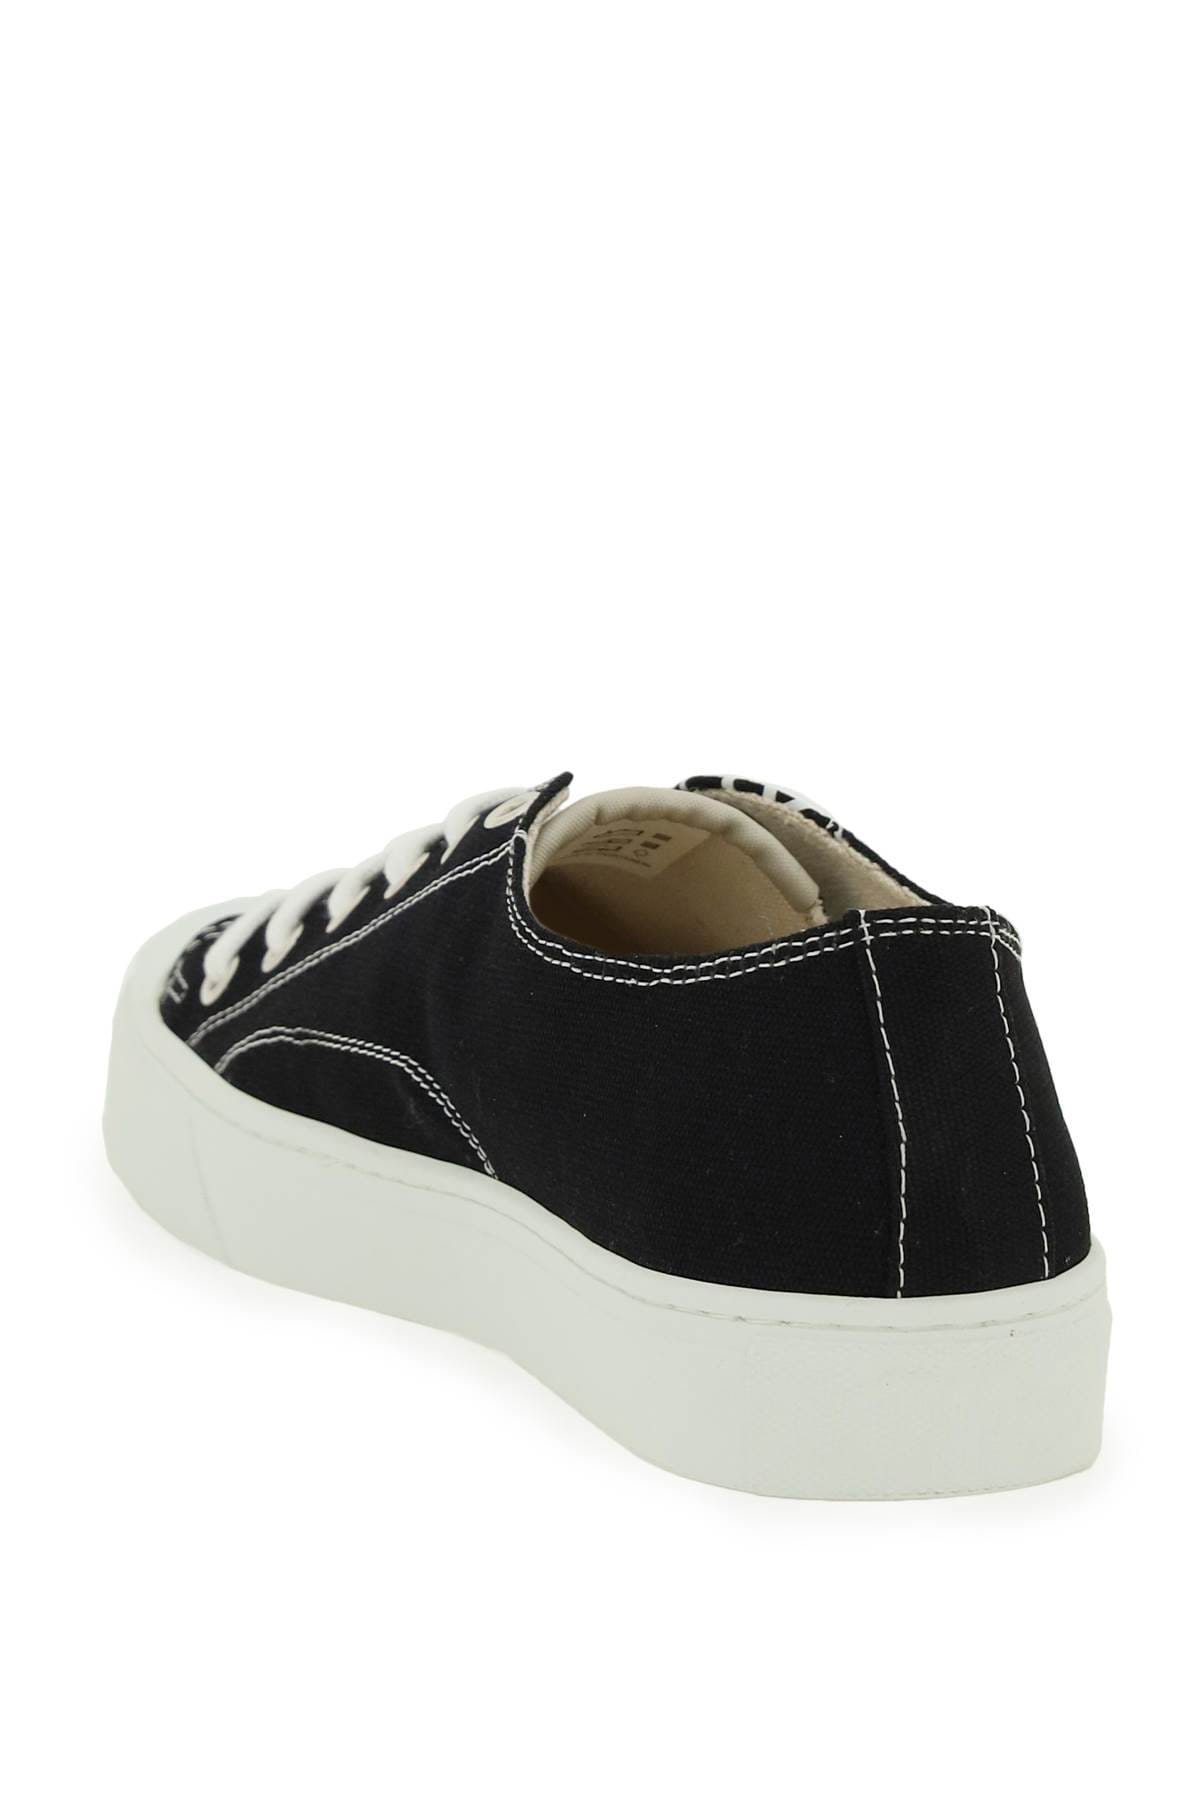 Shop Vivienne Westwood Plimsoll Low Top 2.0 Sneakers In Black (black)